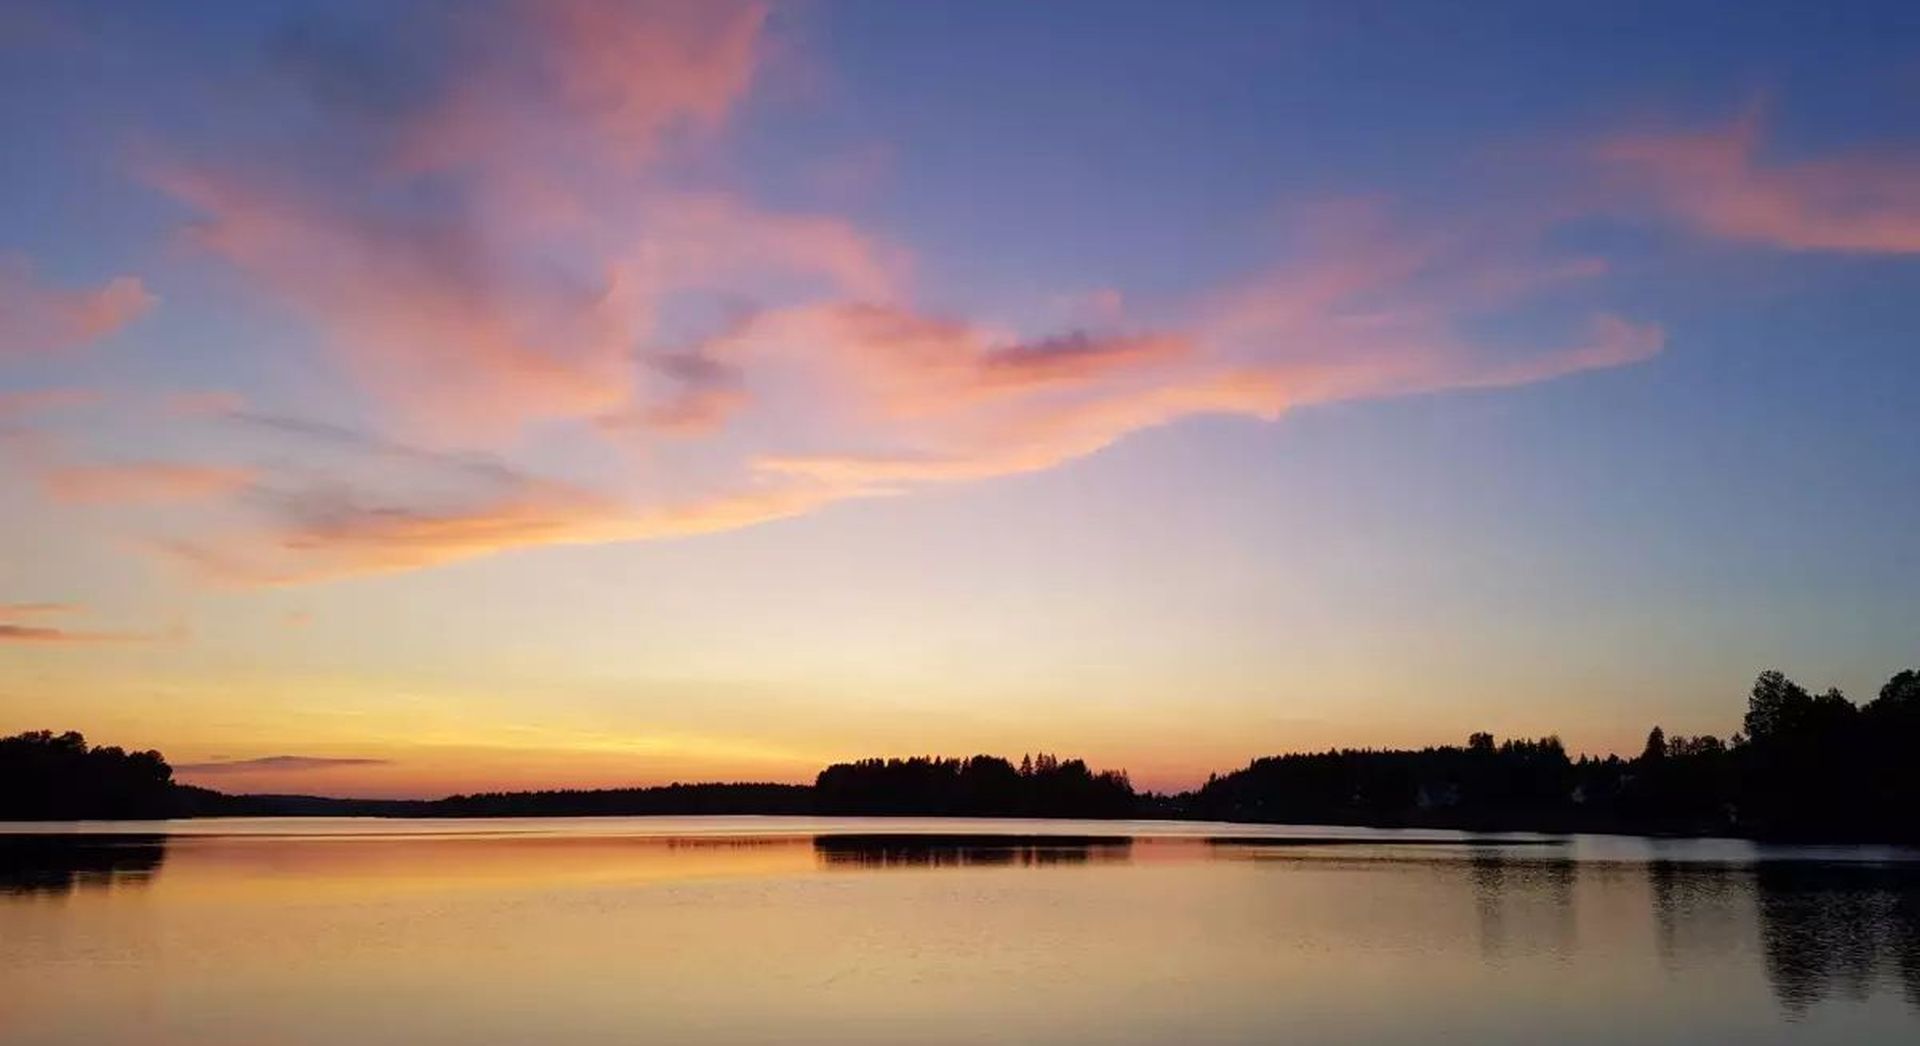 Sunset on a Swedish lake